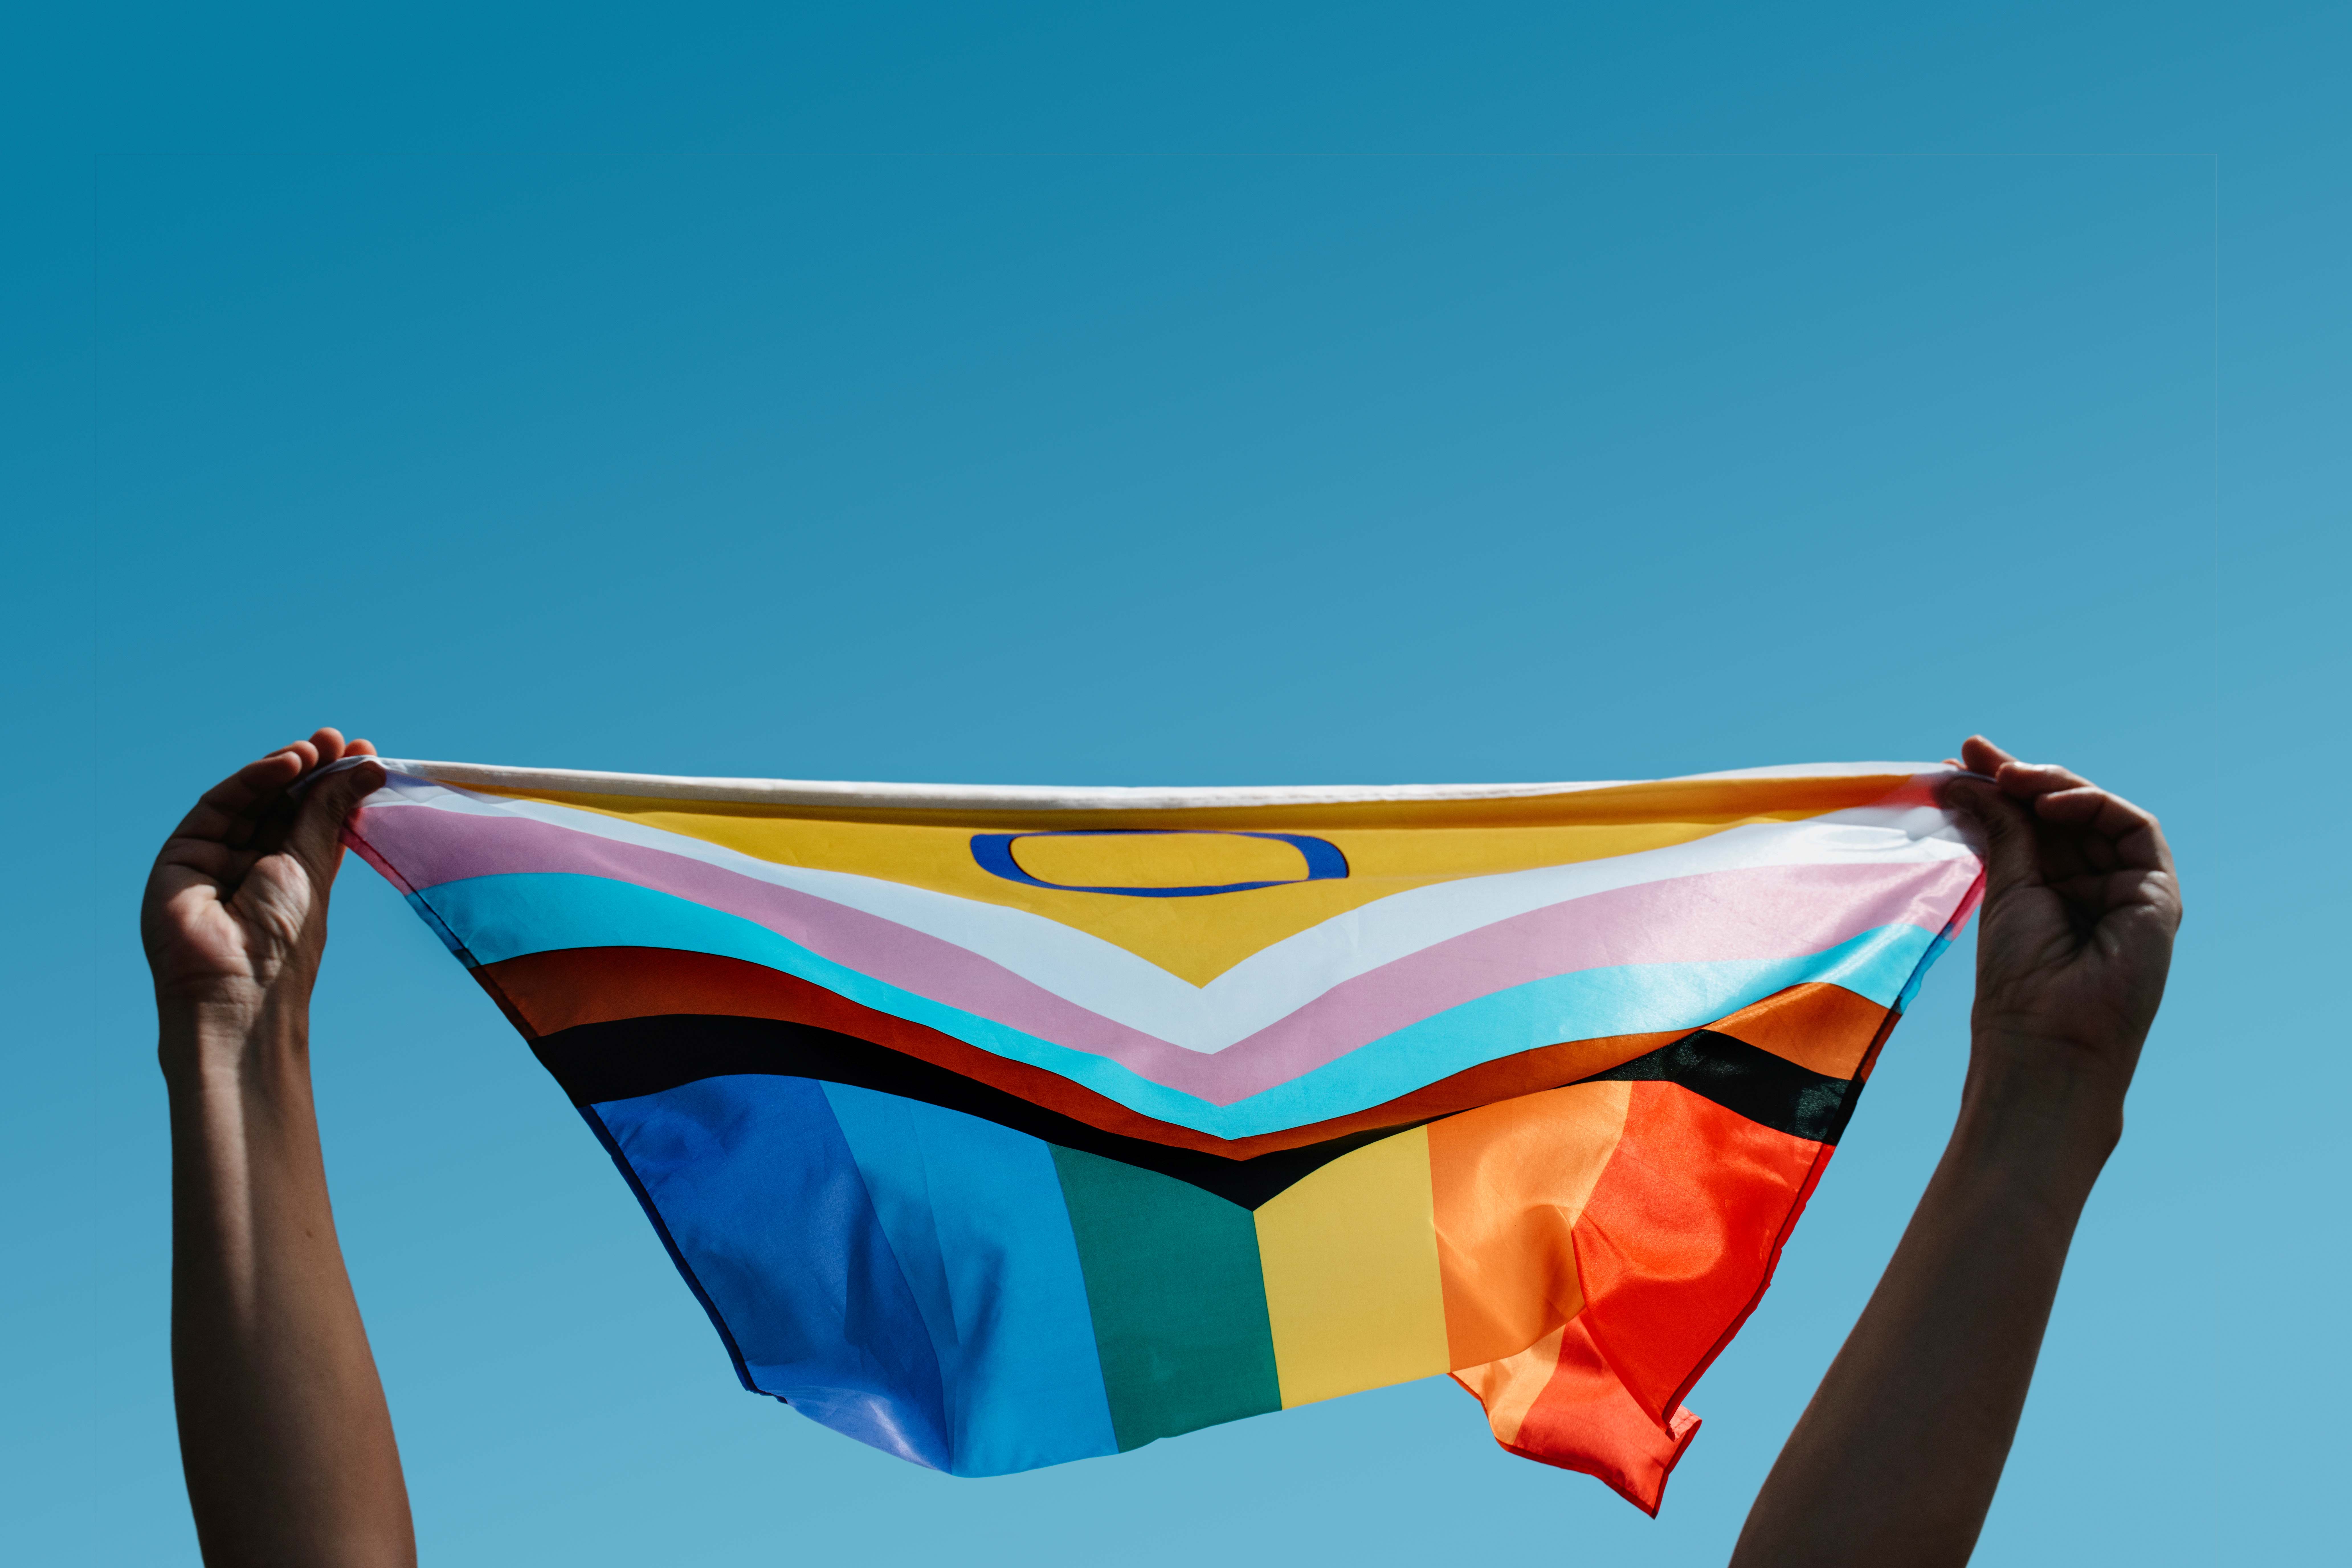 Regenbogenflagge wird festgehalten vor blauem Himmel